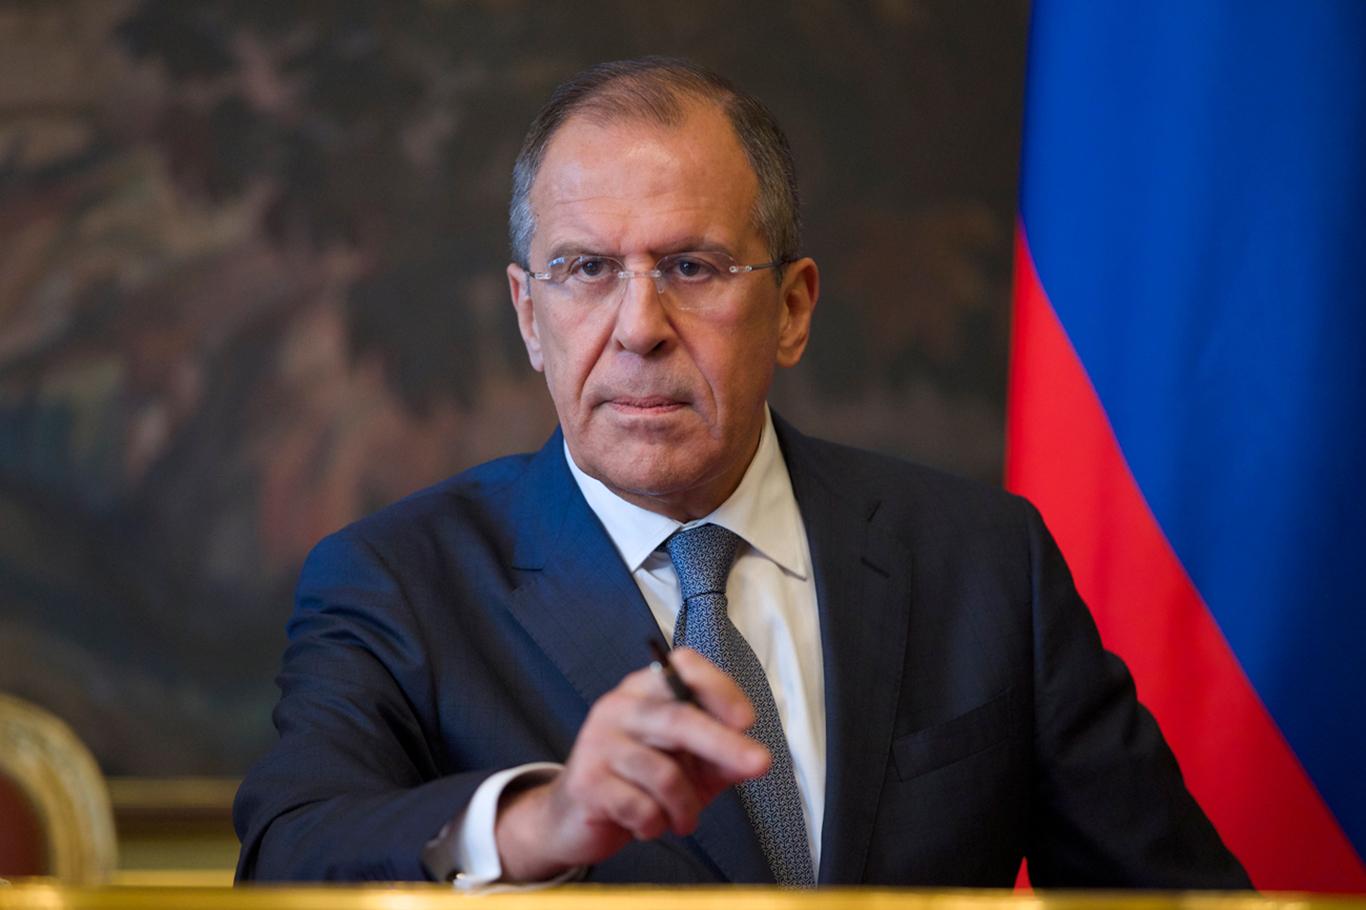 Lavrov: ABD'nin çelişkili açıklamalarından endişe duyuyoruz